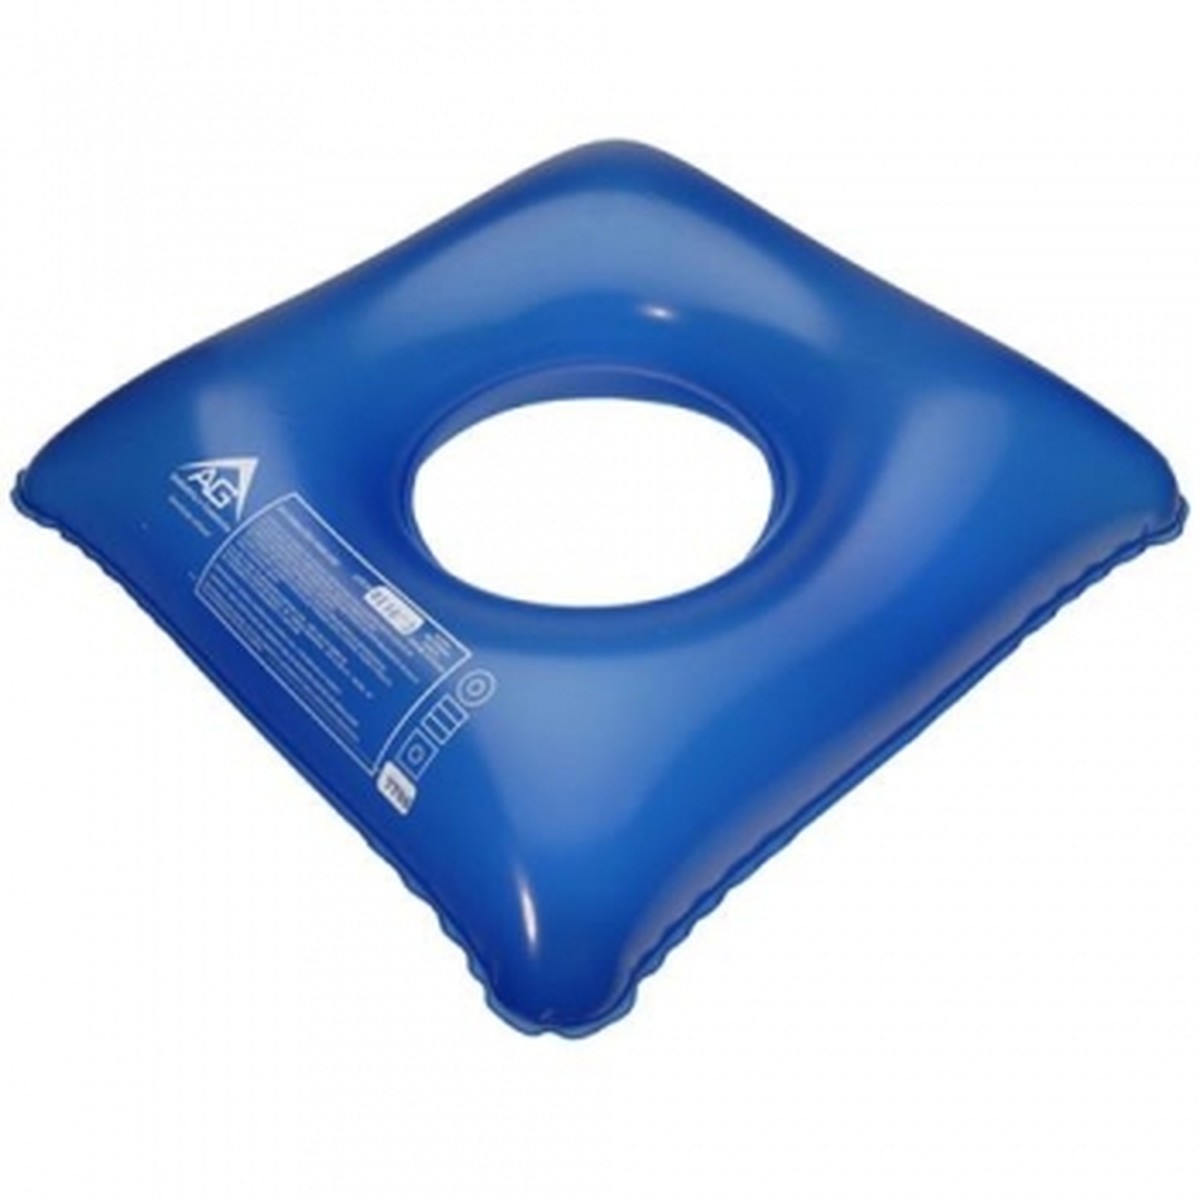 Foto do produto Almofada Inflável Quadrada com Orificio ref:1008 AG Plastico